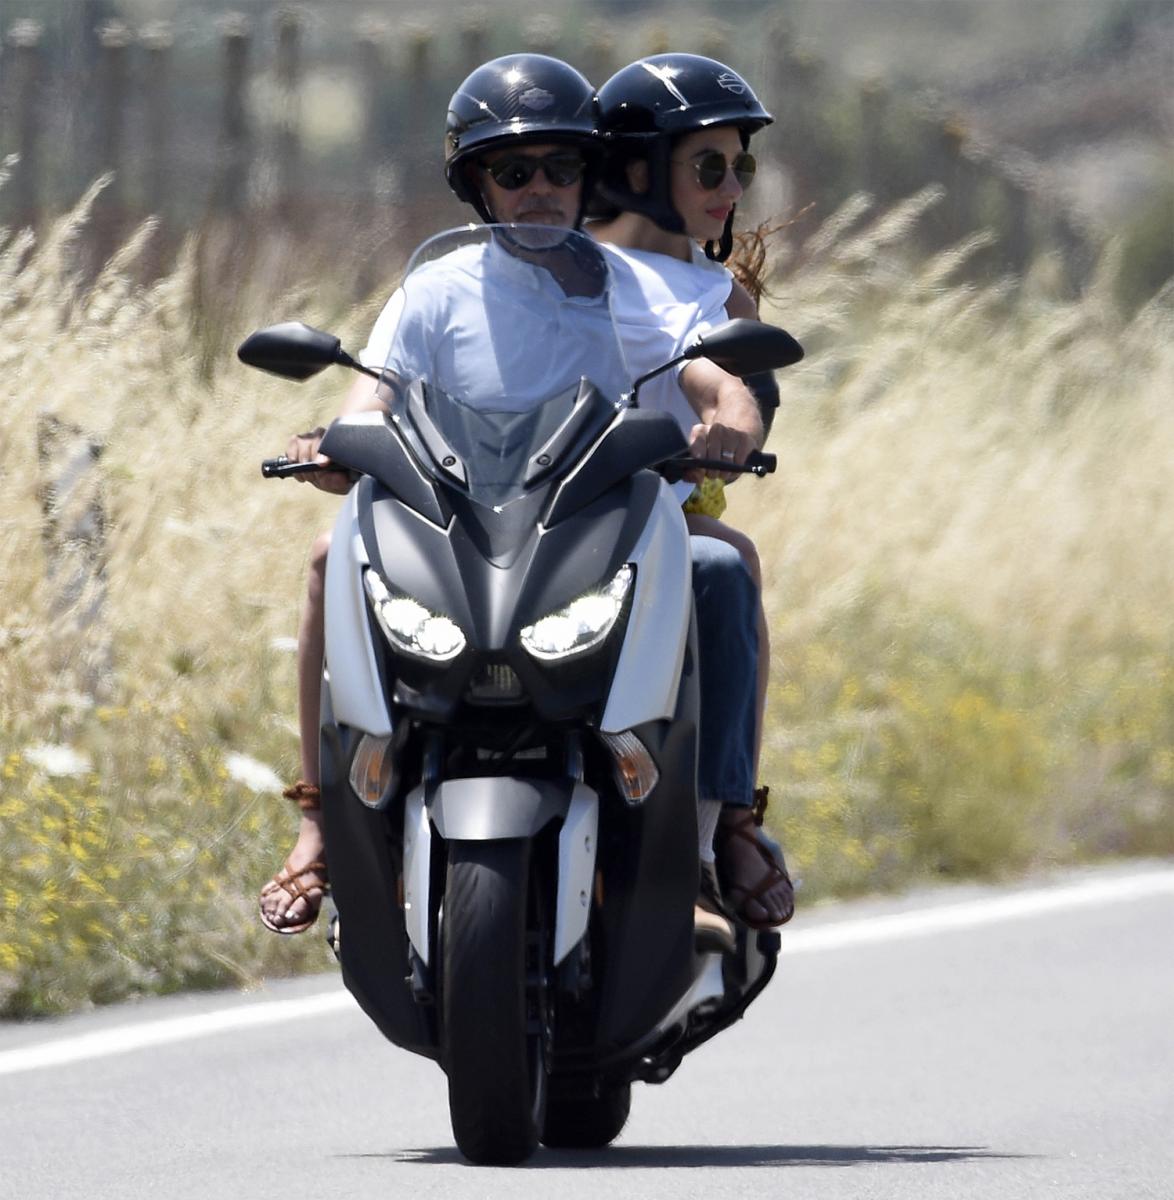 LA SCOOTER DEL ACTOR. Esa es la moto con la que Clooney se accidentó. FOTO TOMADA DE INFOBAE.COM